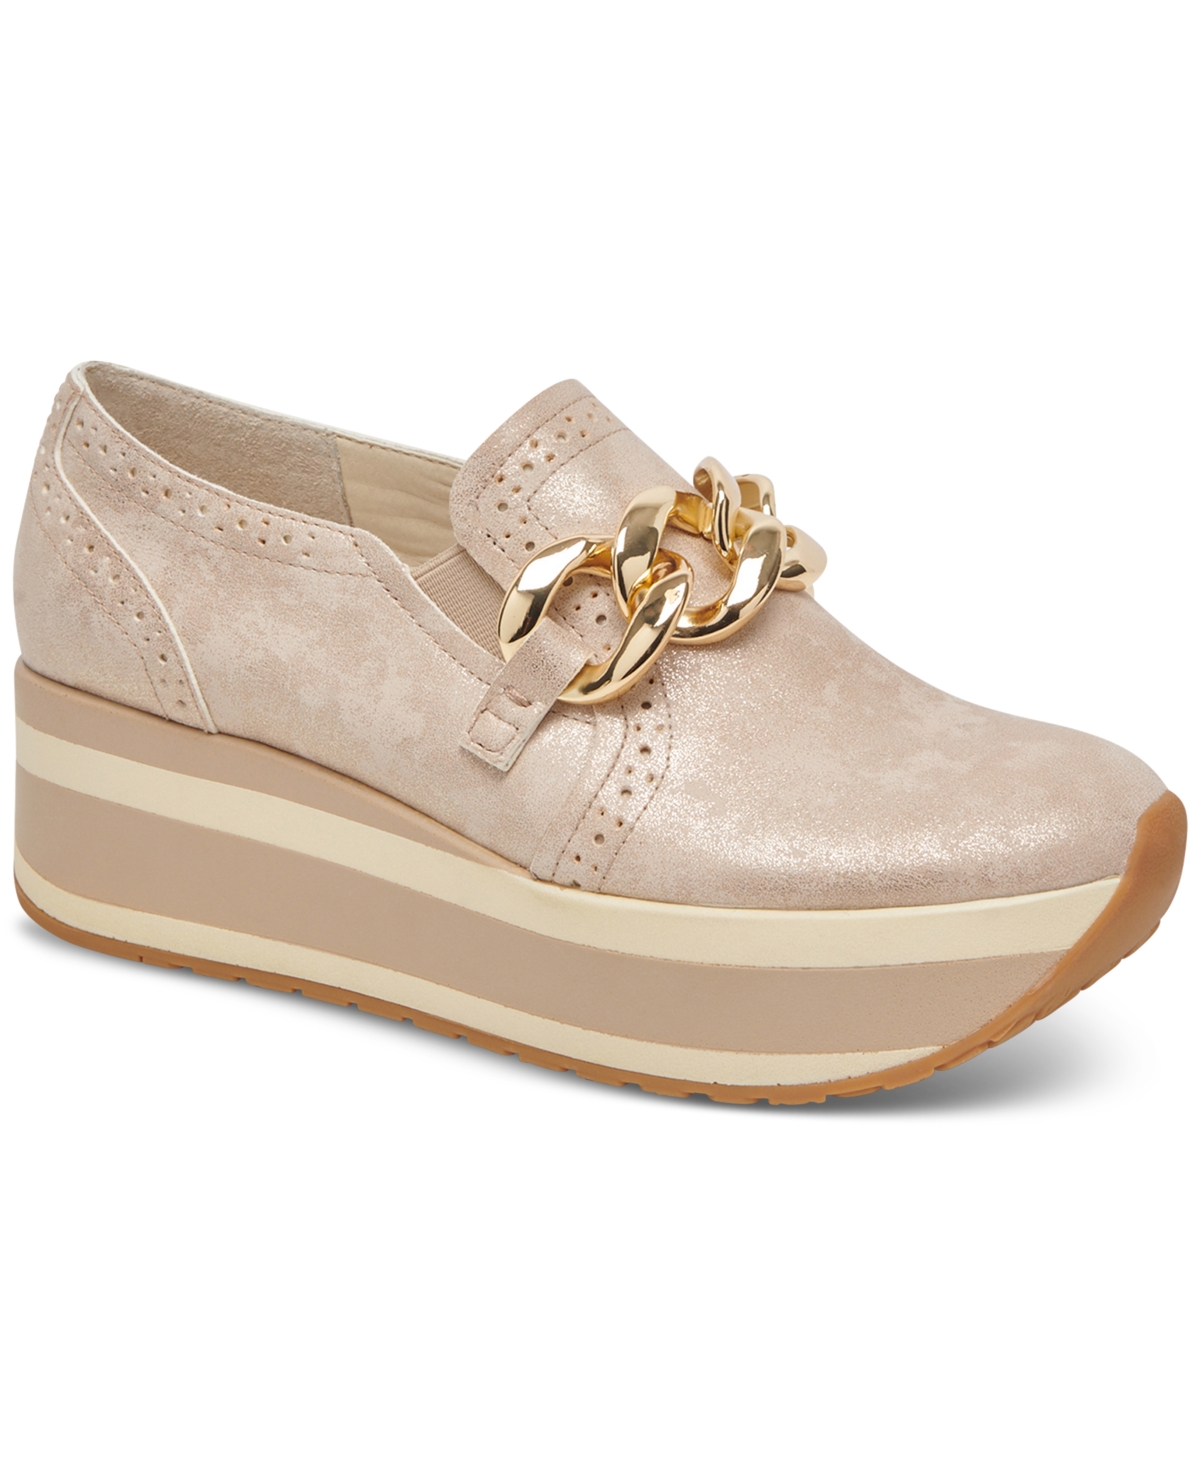 Women's Jhenee Platform Slip-On Loafer Sneakers - Light Gold Nubuck